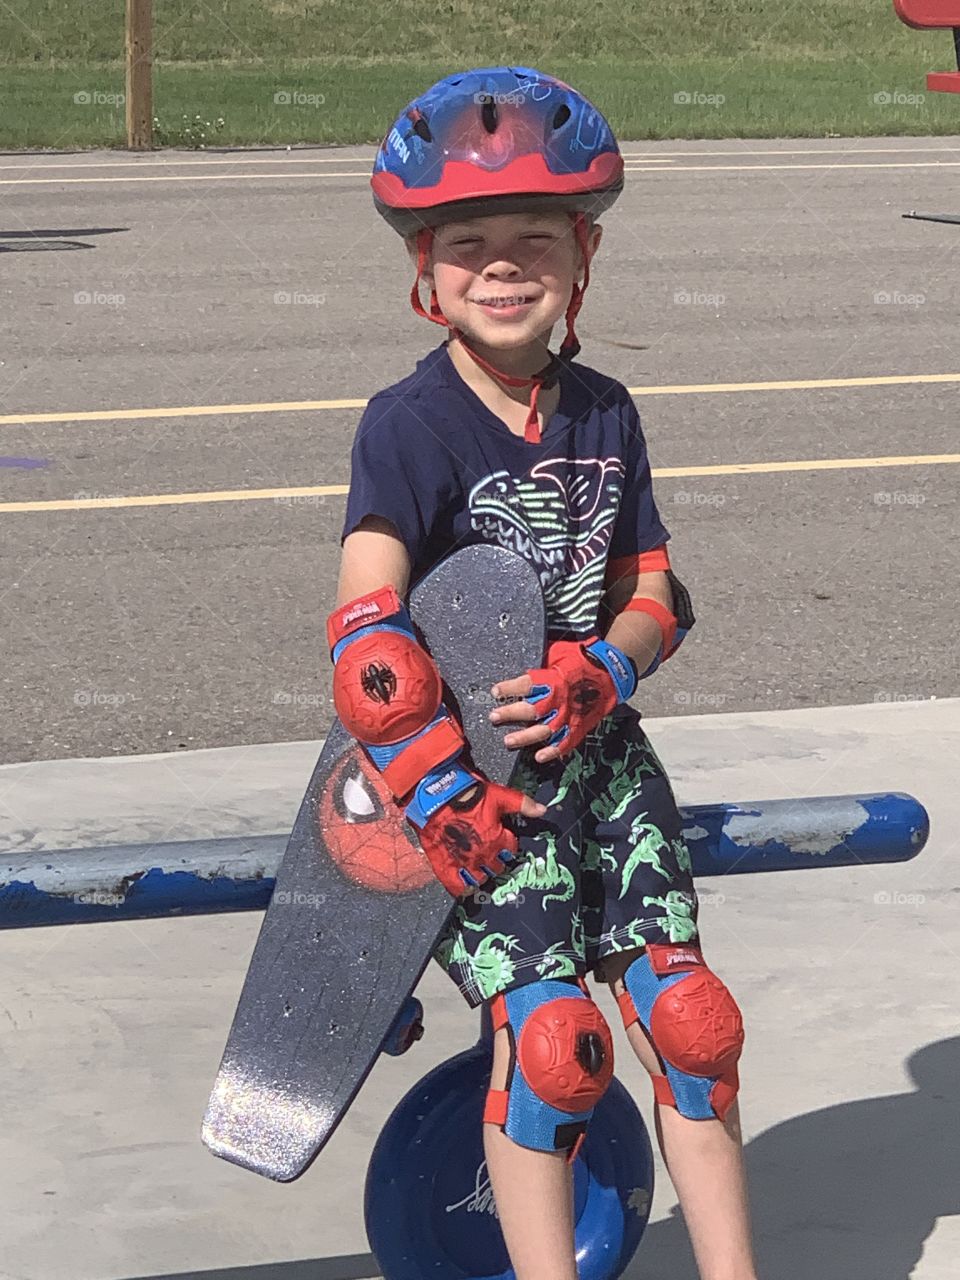 Little skateboarder